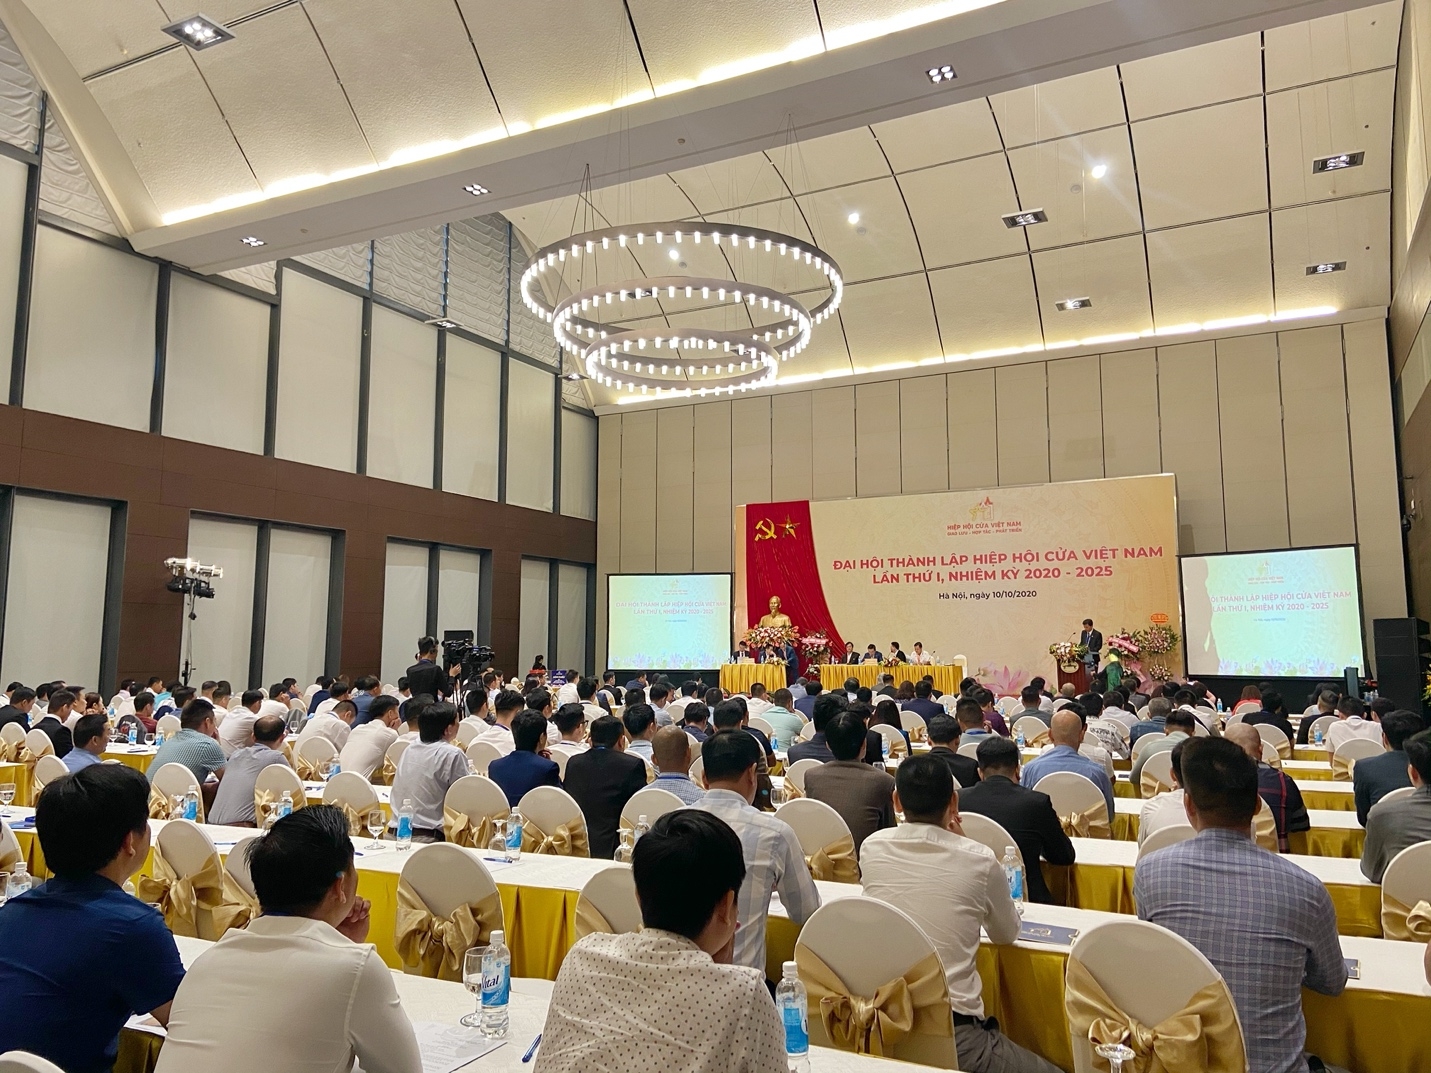 Đại hội thành lập Hiệp hội Cửa Việt Nam